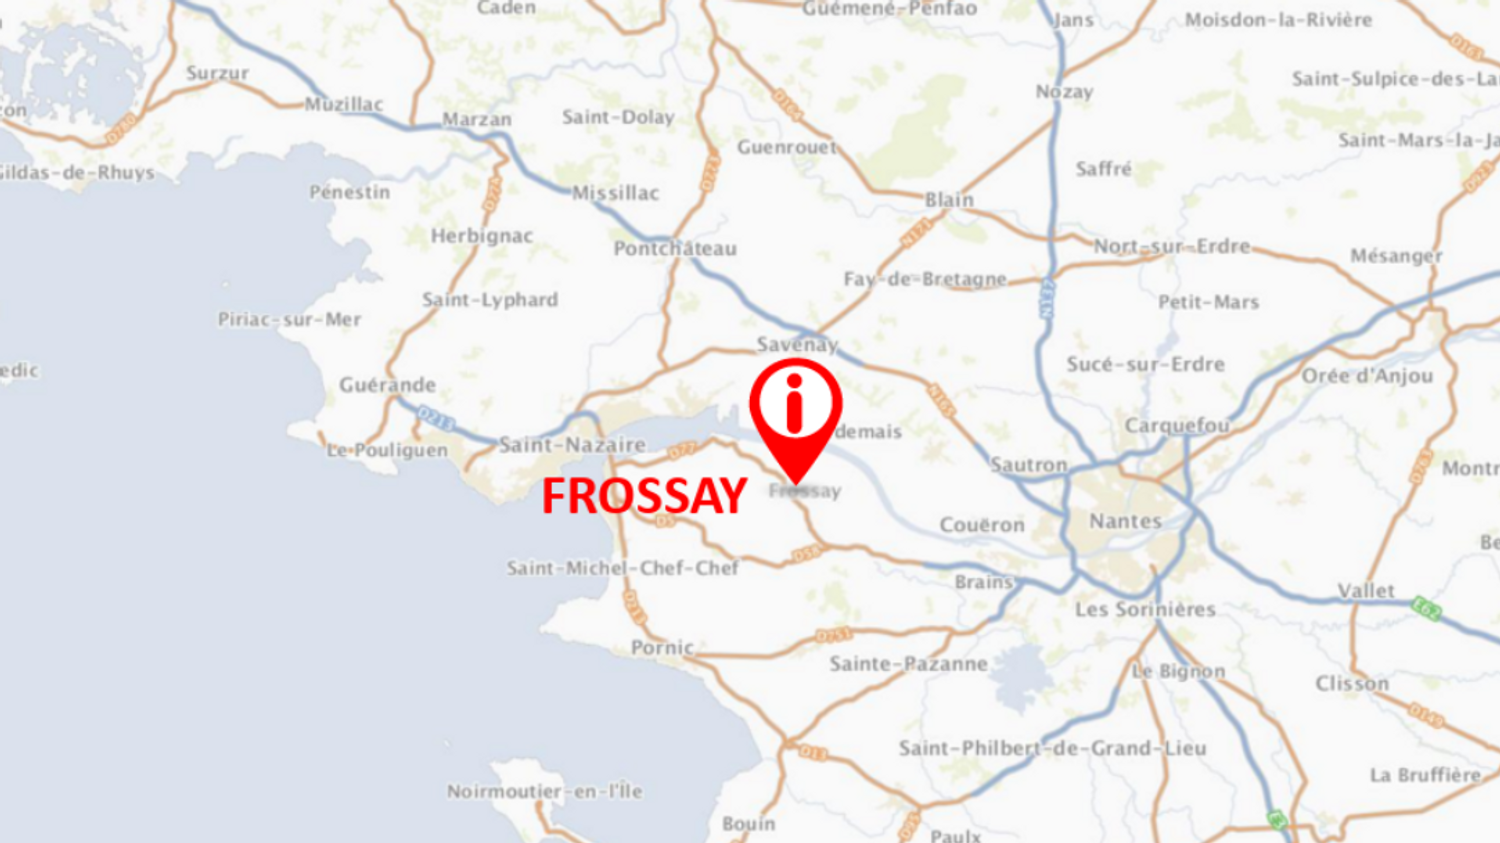 Frossay